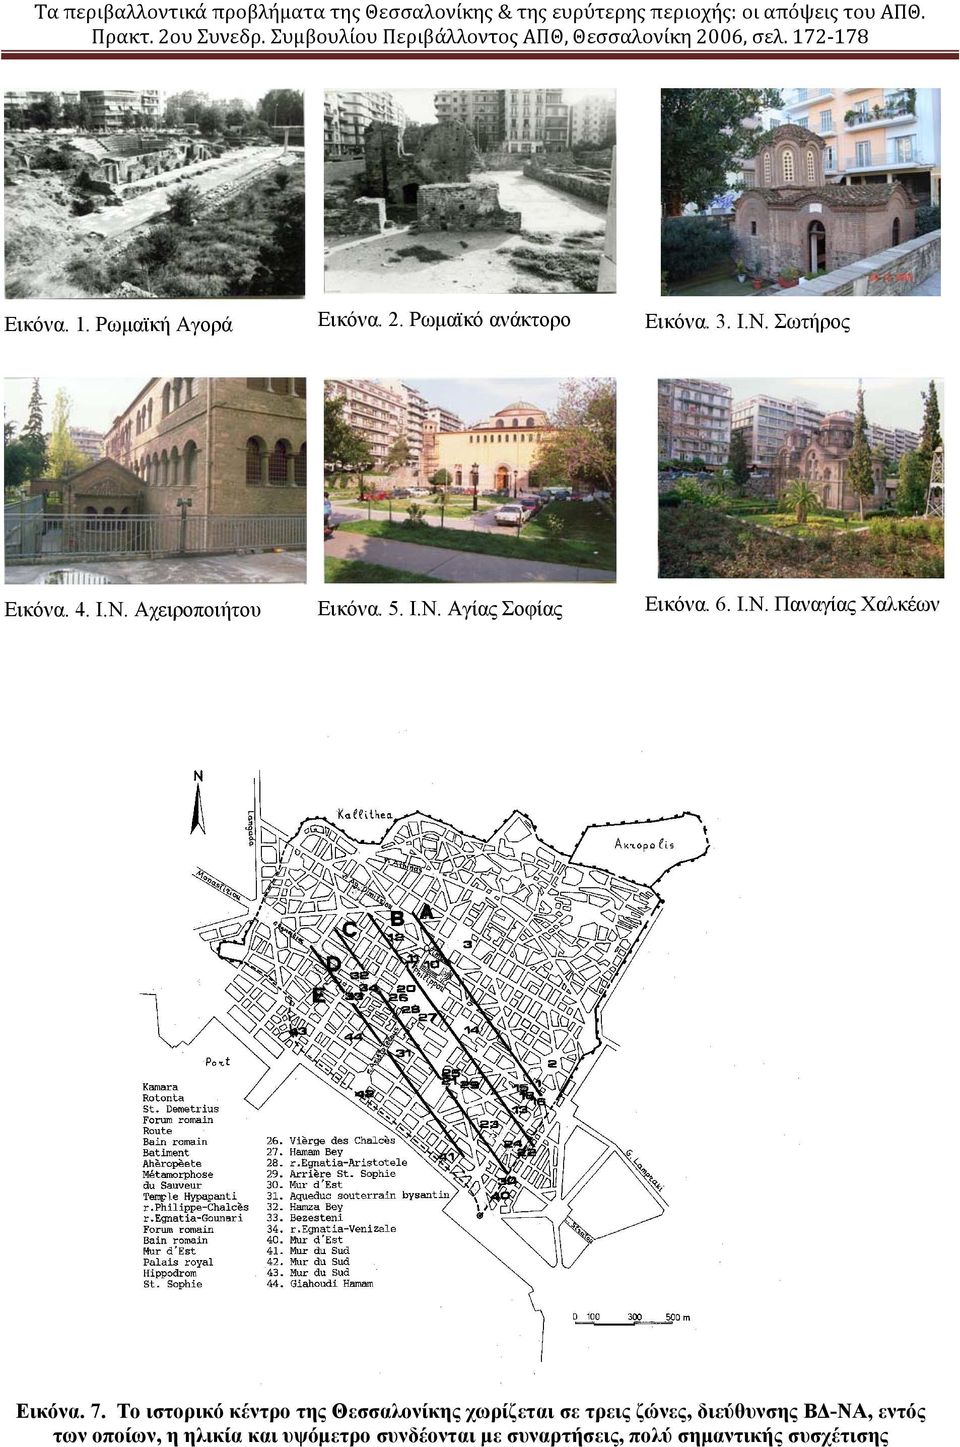 7. Το ιστορικό κέντρο της Θεσσαλονίκης χωρίζεται σε τρεις ζώνες, διεύθυνσης ΒΔ-ΝΑ, εντός